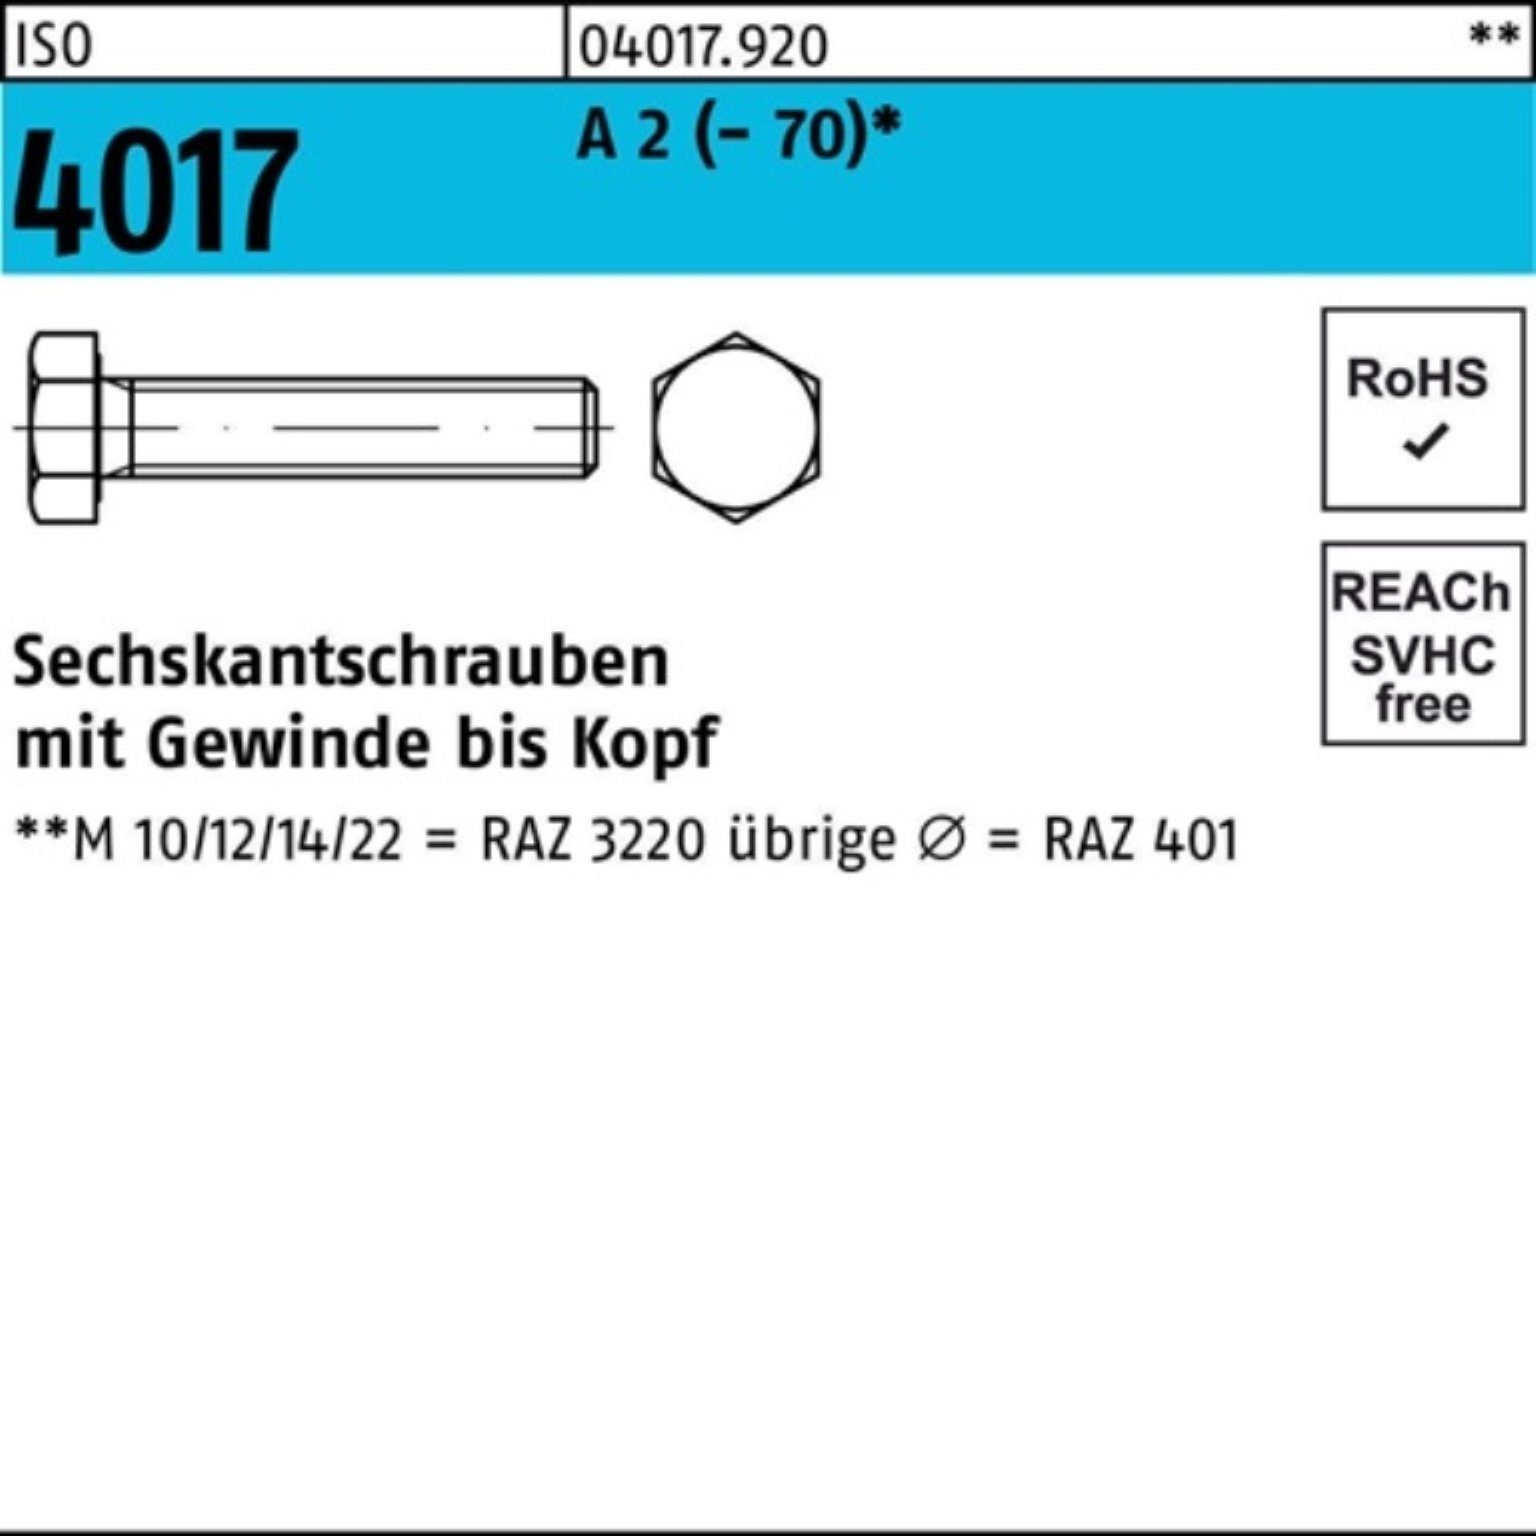 Bufab Sechskantschraube 100er Pack Sechskantschraube ISO 4017 VG M6x 120 A 2 (70) 100 Stück